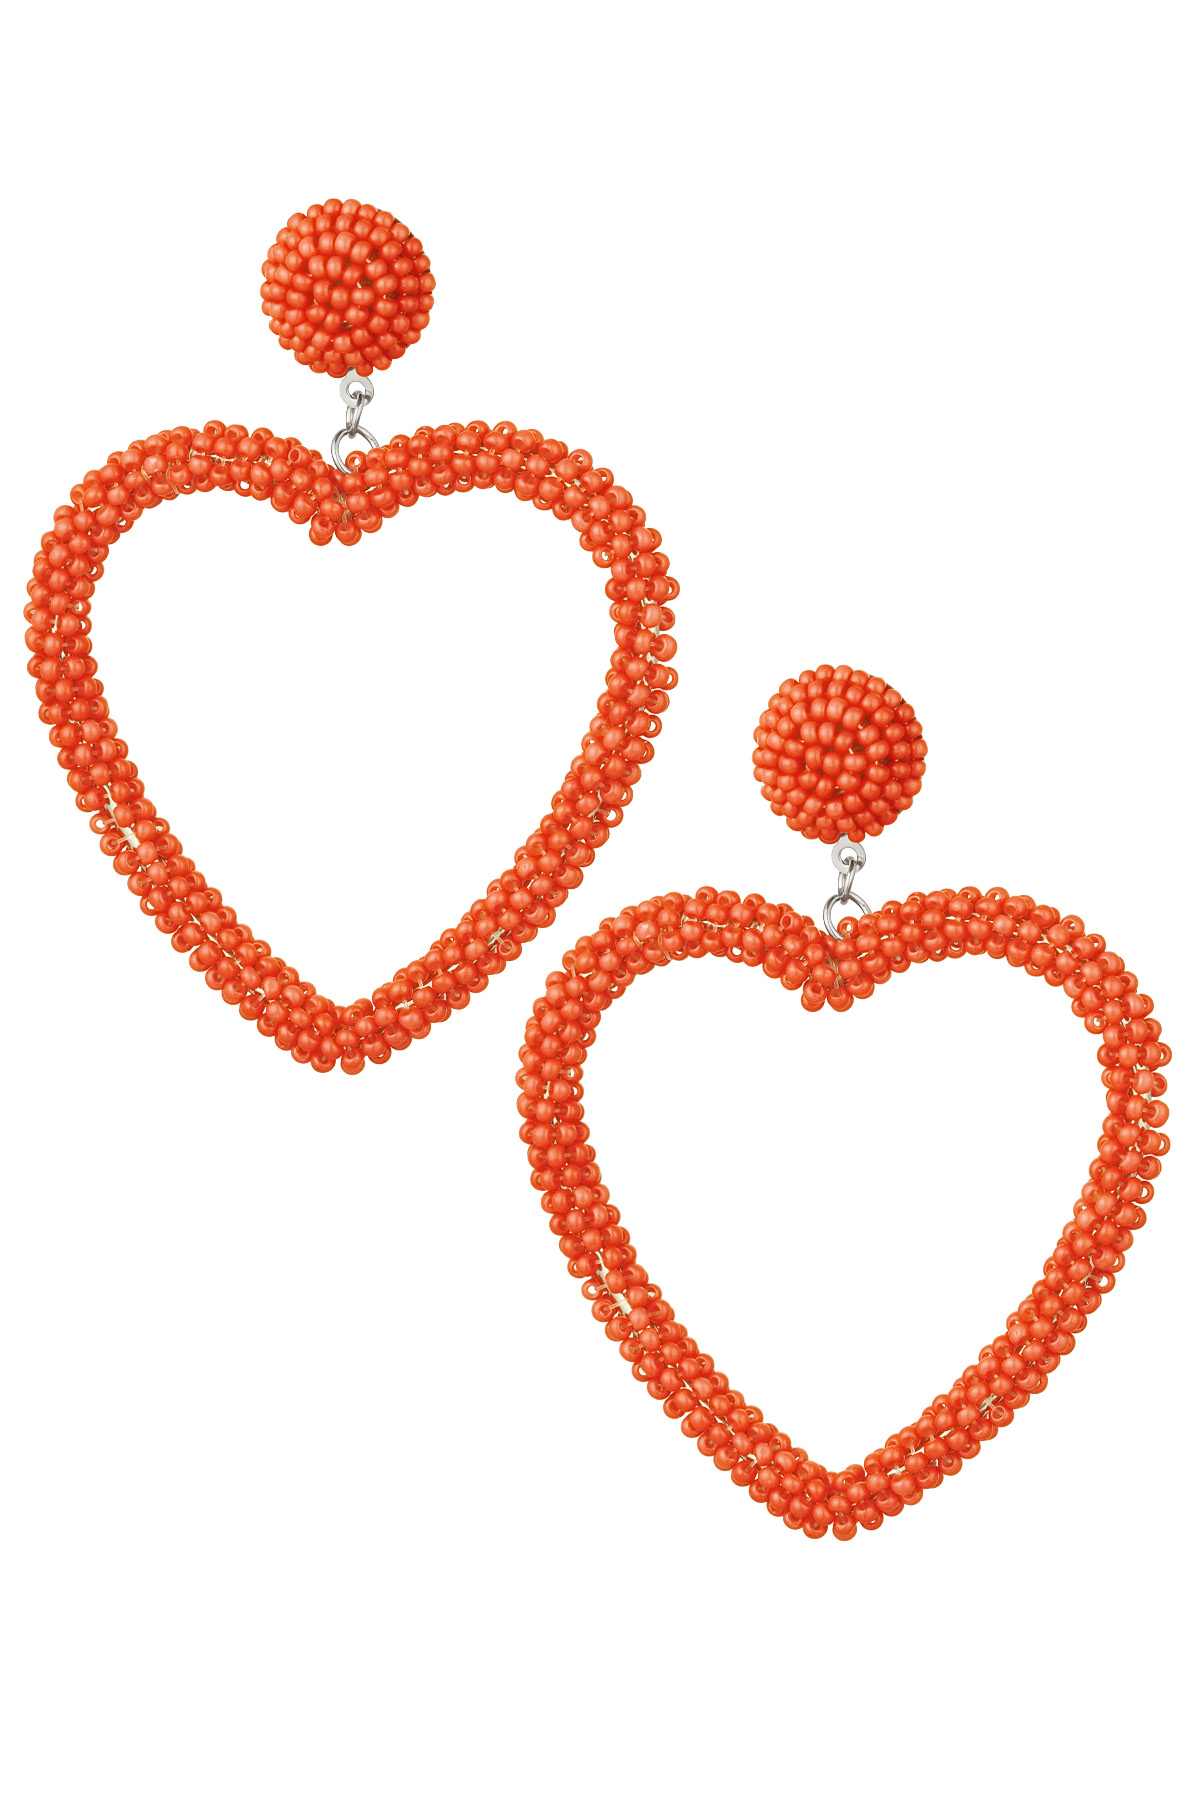 Orecchini perline caramella - arancione Acciaio inossidabile